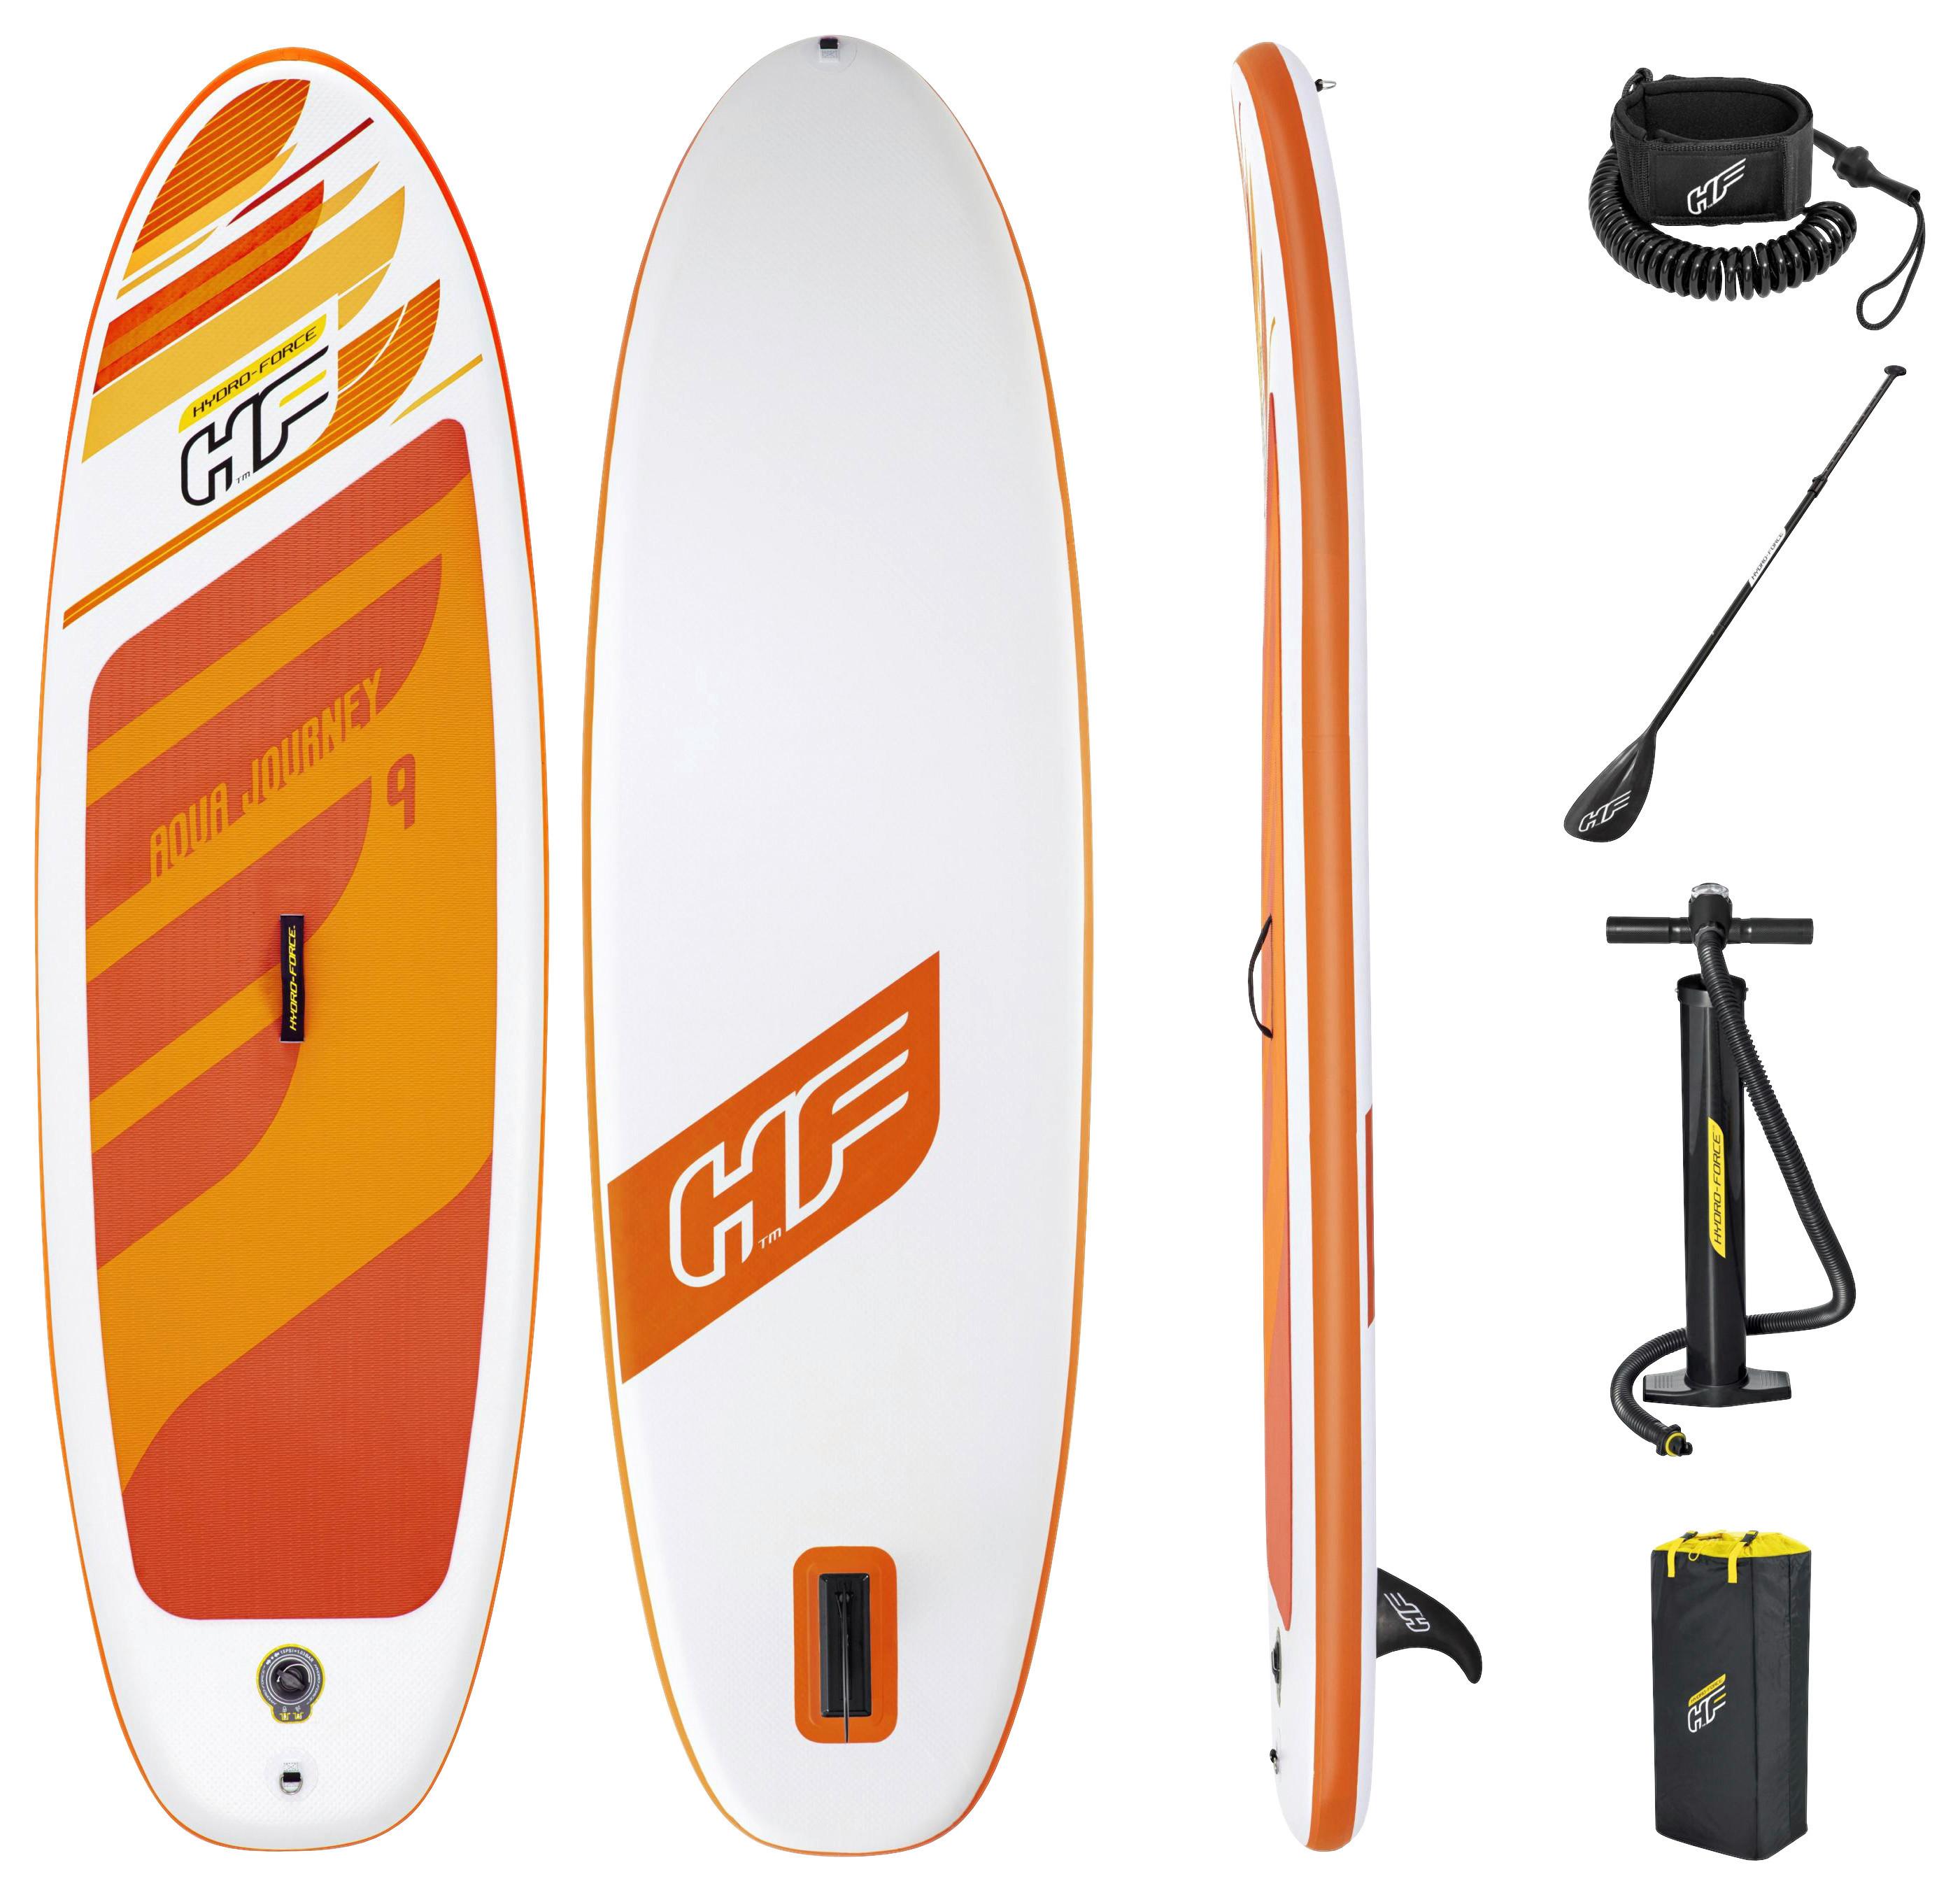 Bestway Stand Up Paddle Board Aufblasbar, Pumpe, Orange/Weiß - Orange/Weiß, Trend, Kunststoff/Metall (274/76/12cm) - Bestway